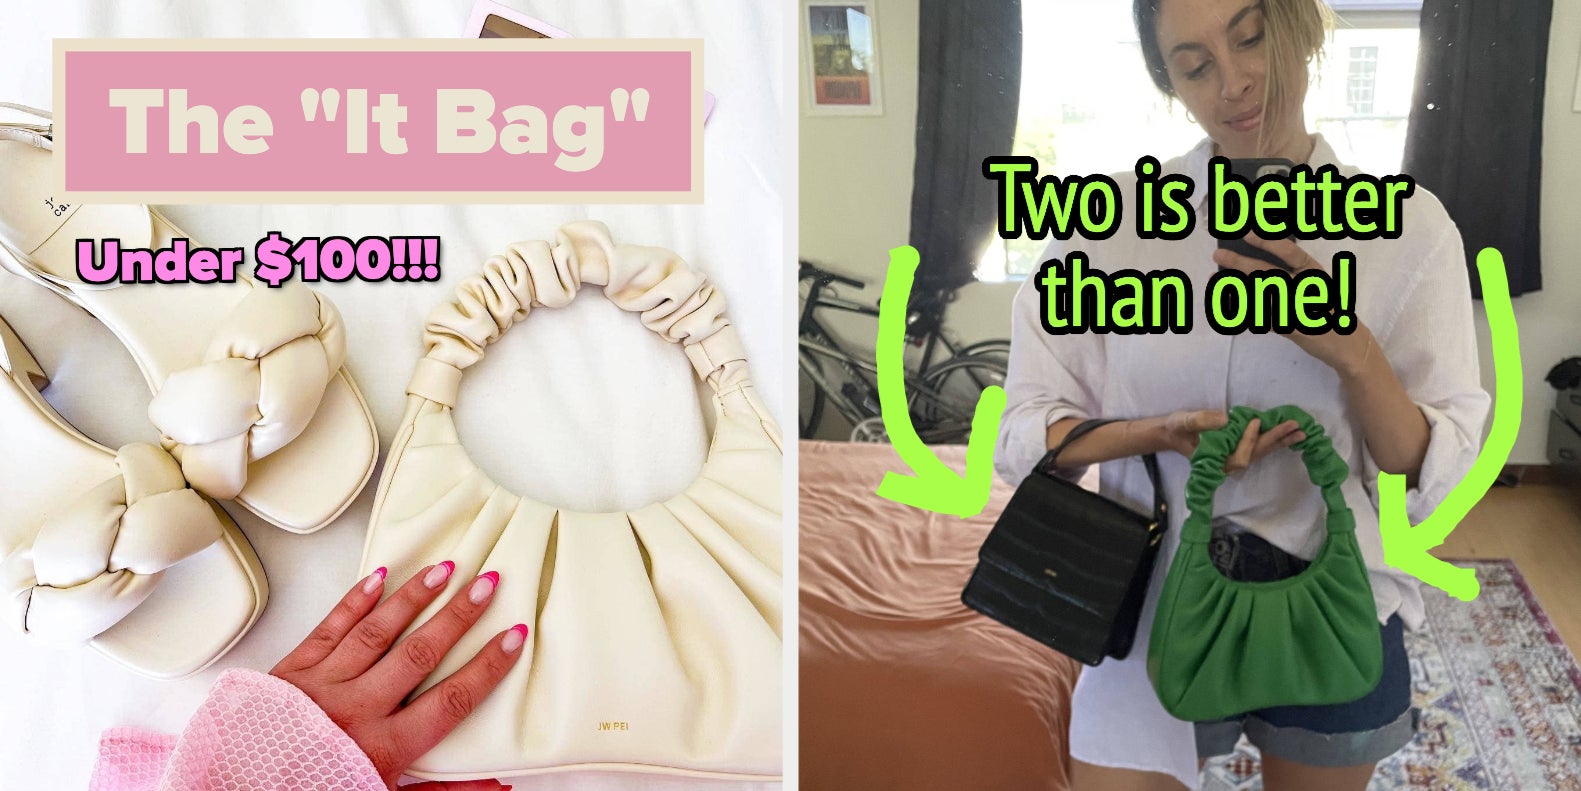 Gabbi Metallic Ruched Hobo Handbag - Pink Online Shopping - JW Pei